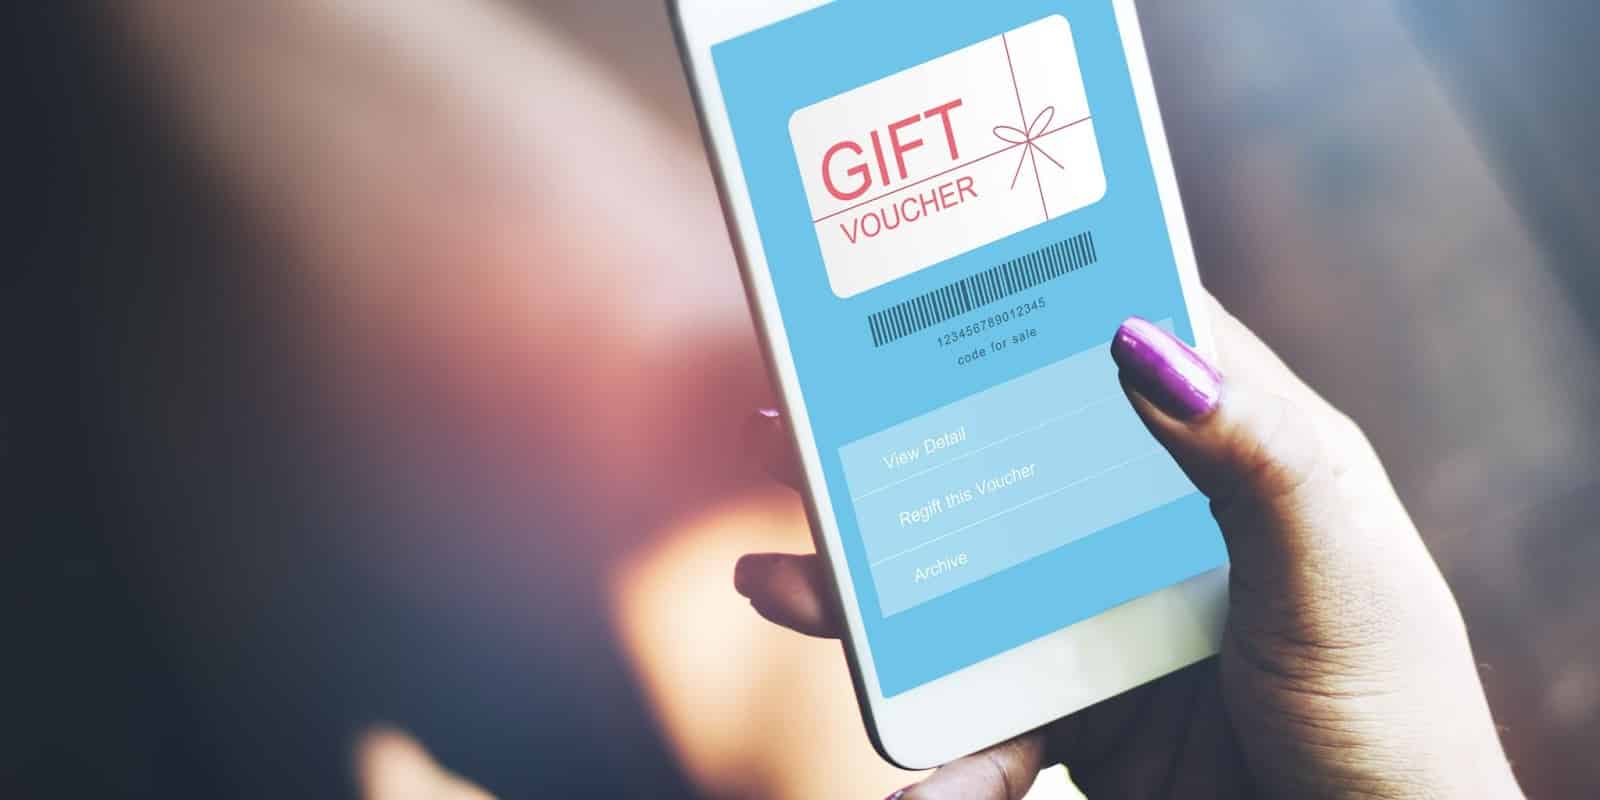 Gift voucher app on phone